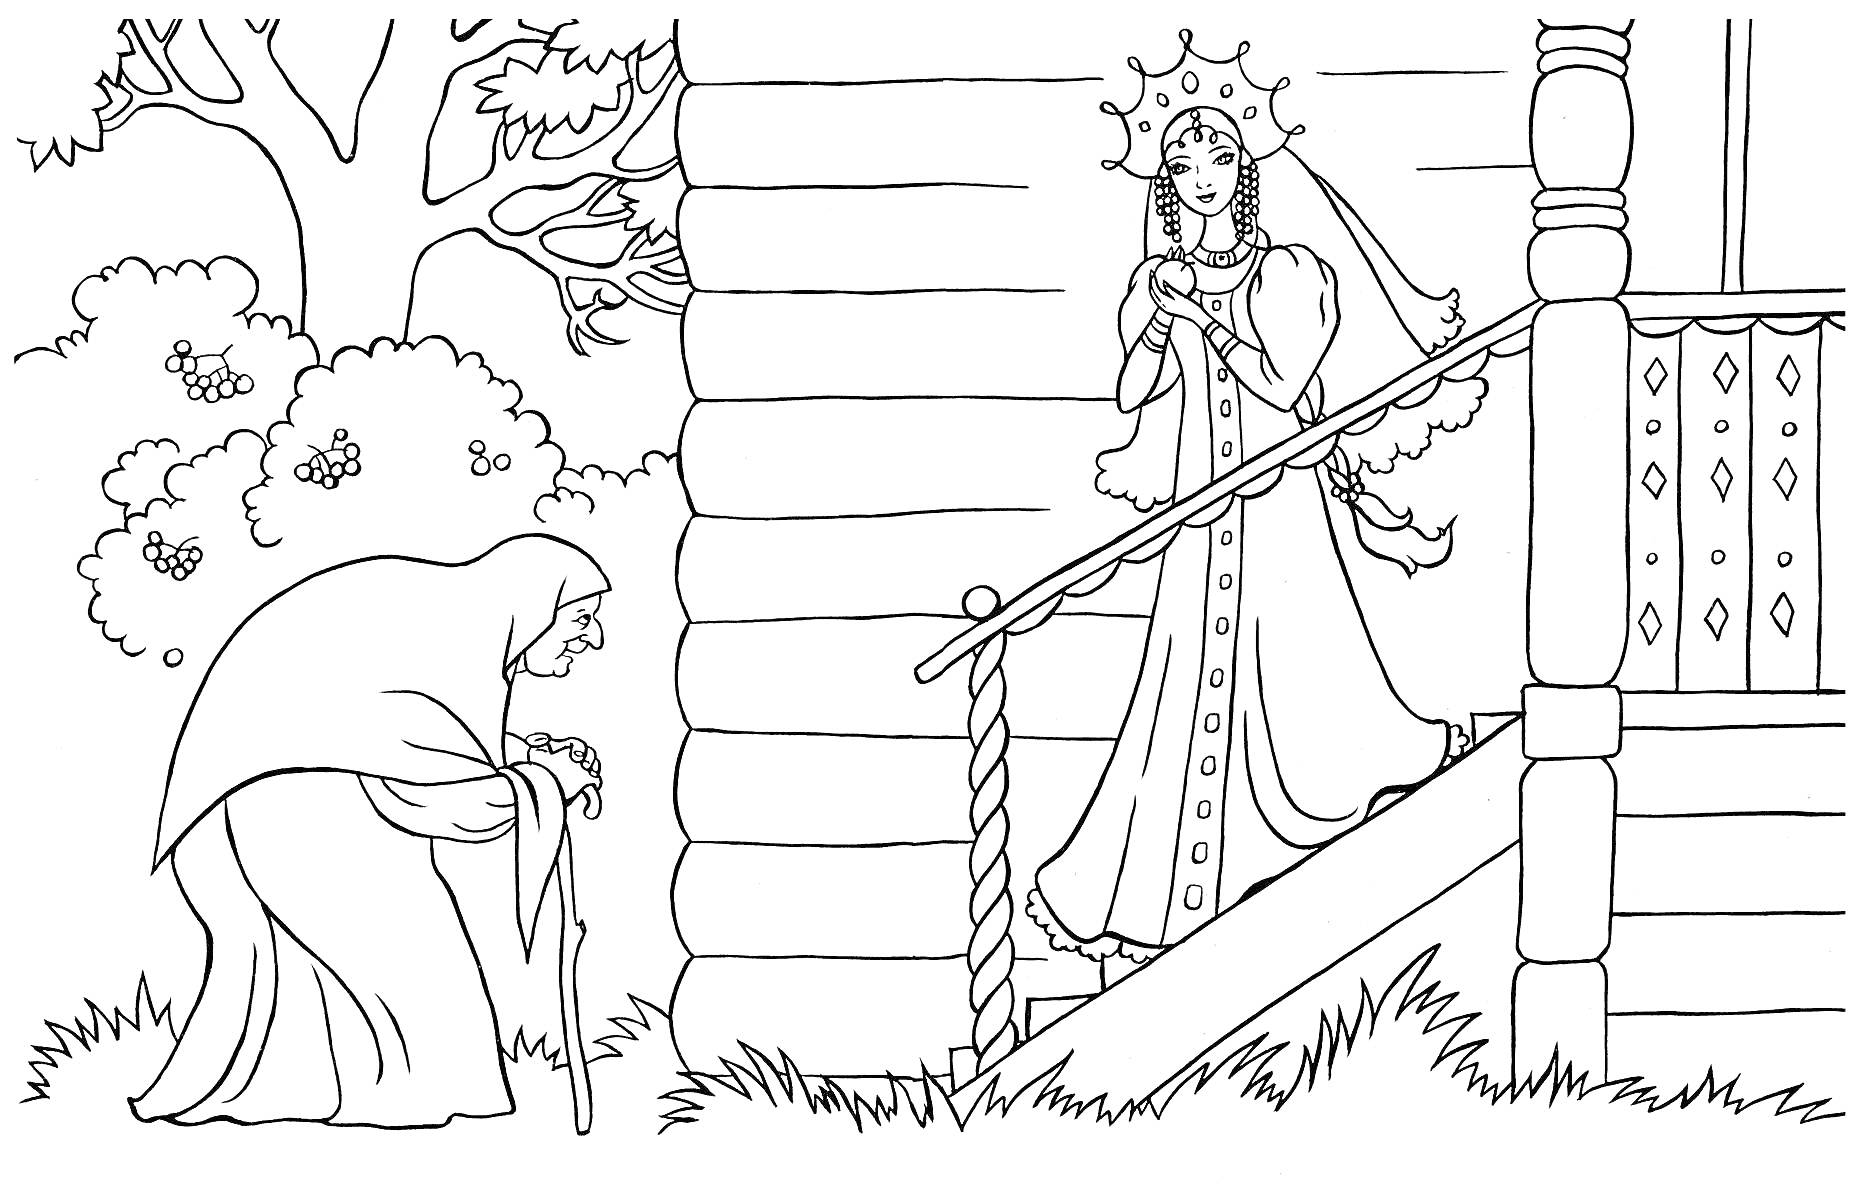 Старуха в плаще у крыльца, встреча с царицей в короне, ступеньки дома на фоне деревьев